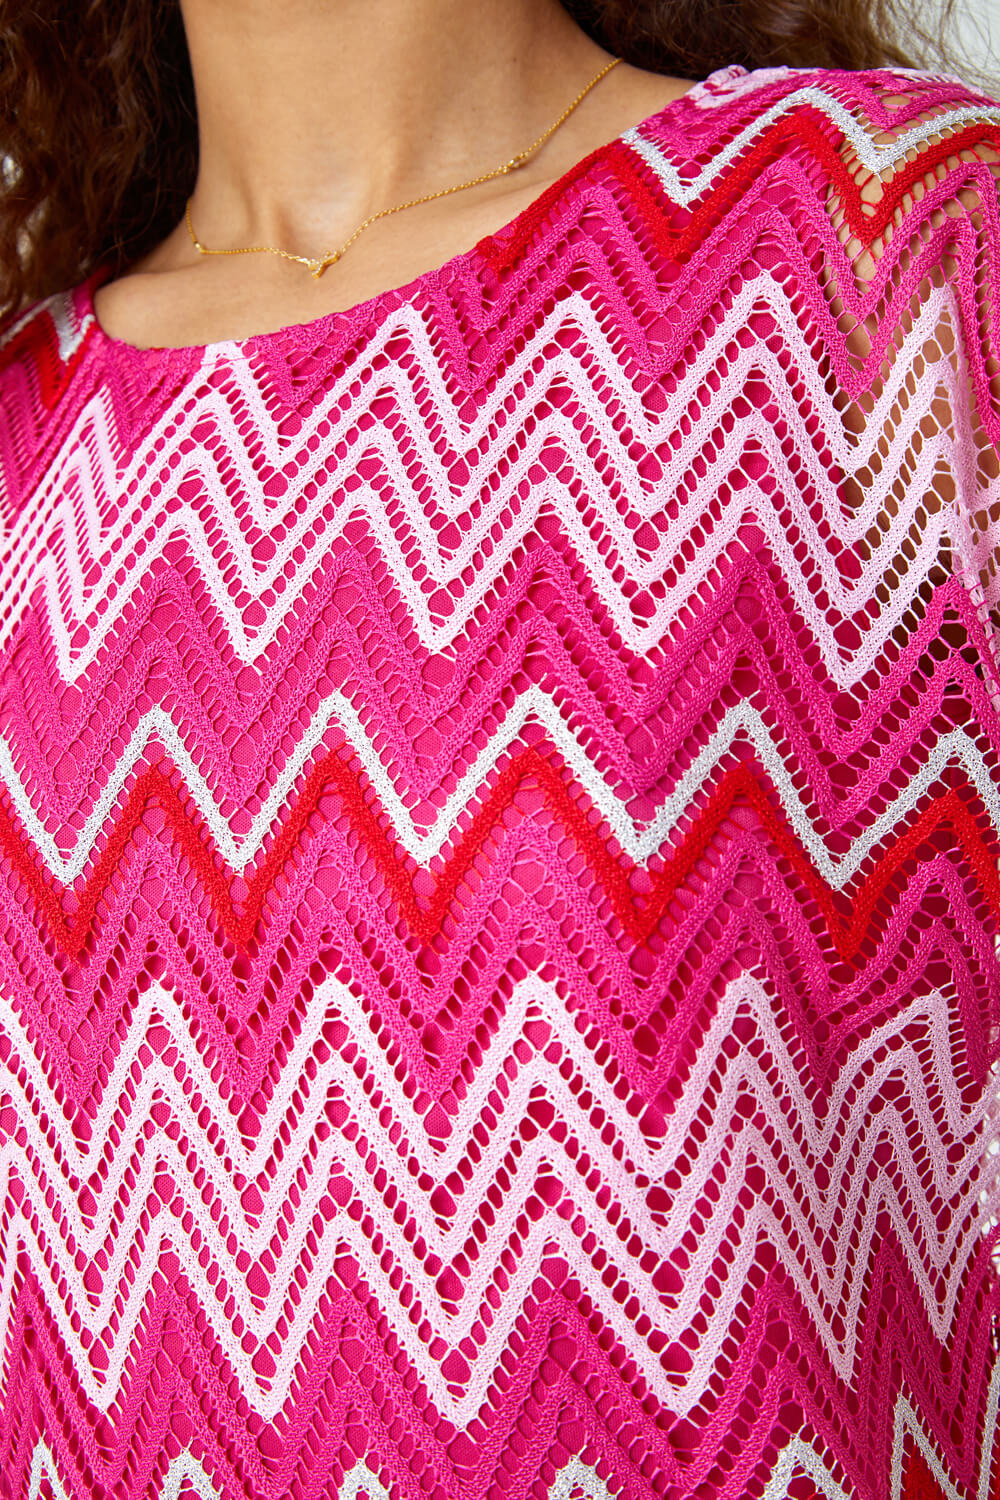 PINK Zig Zag Crochet Overlay Top, Image 4 of 4